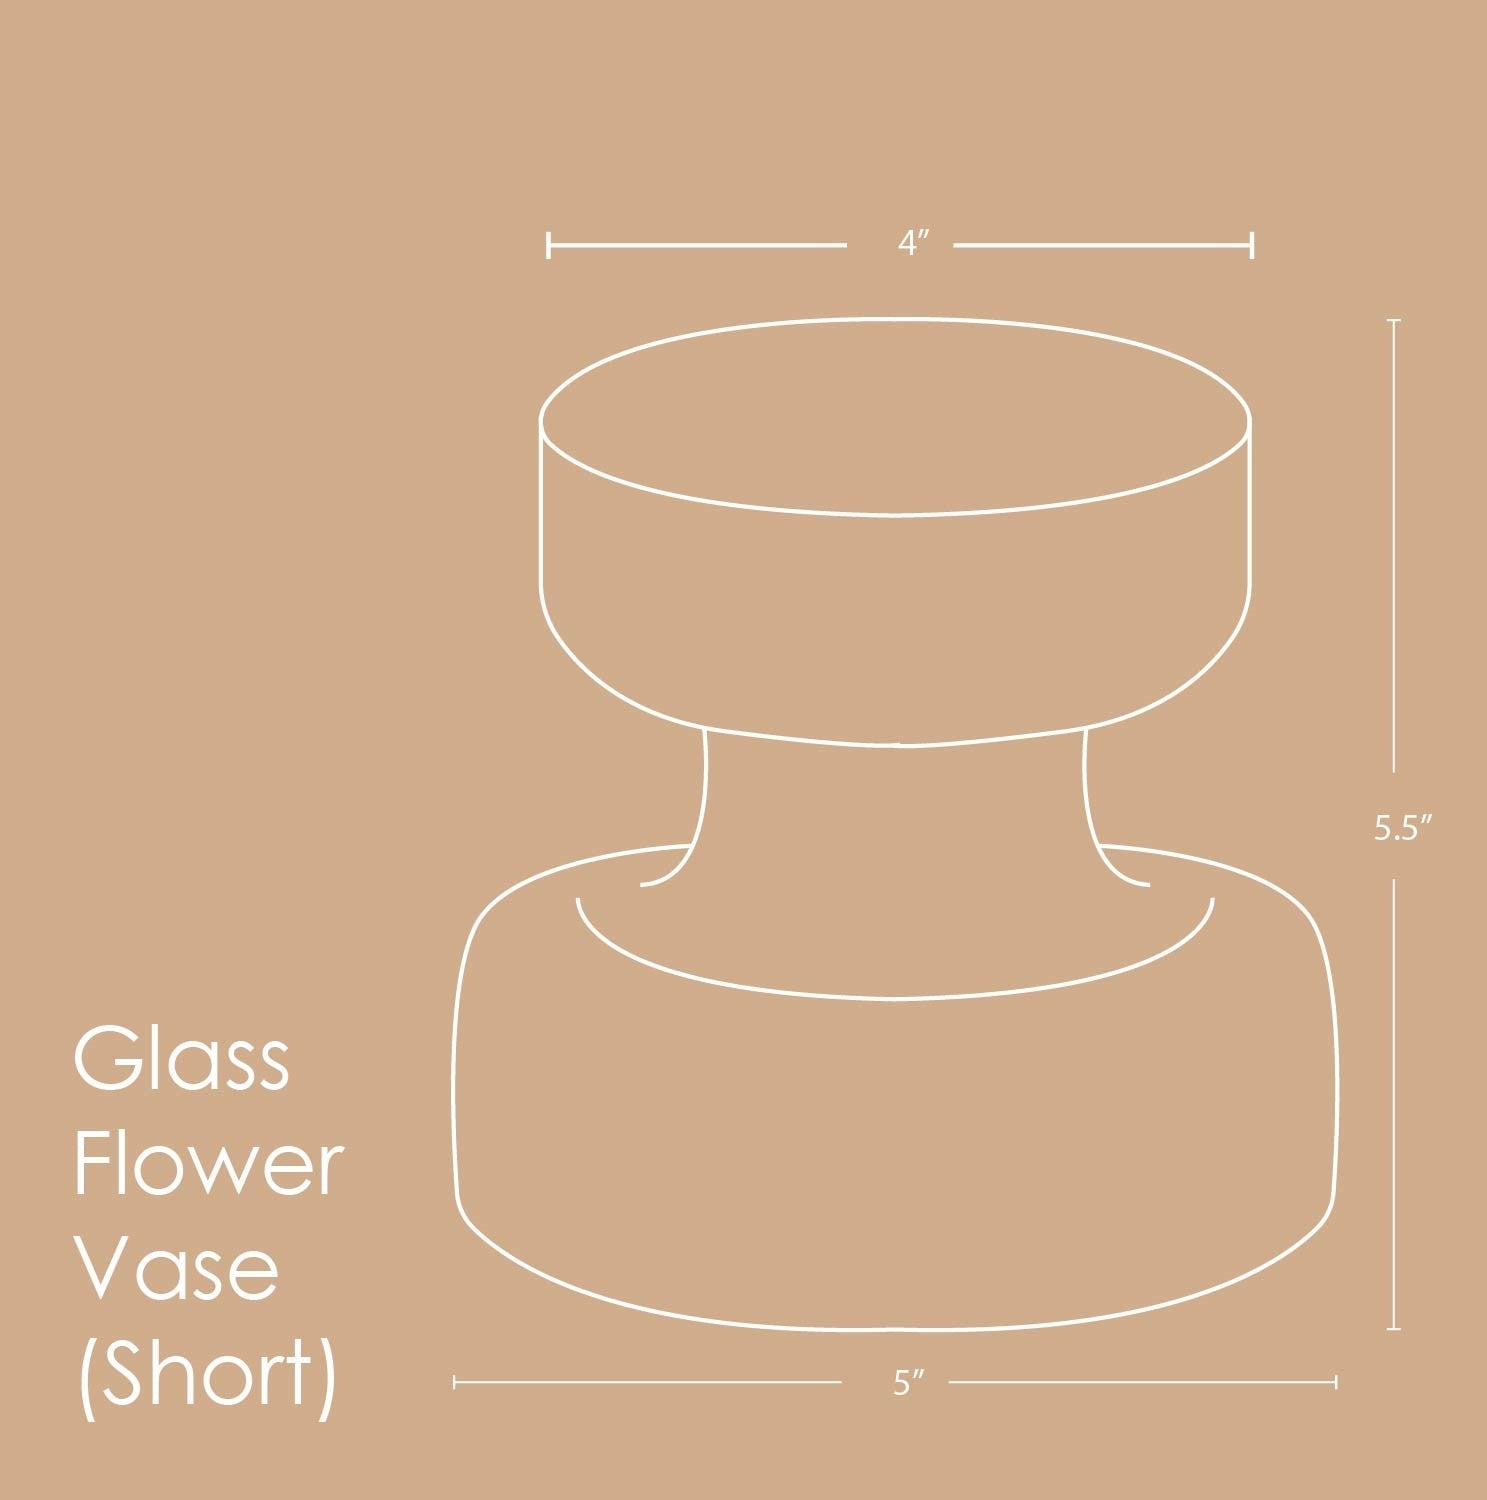 Lilac Flower Vase